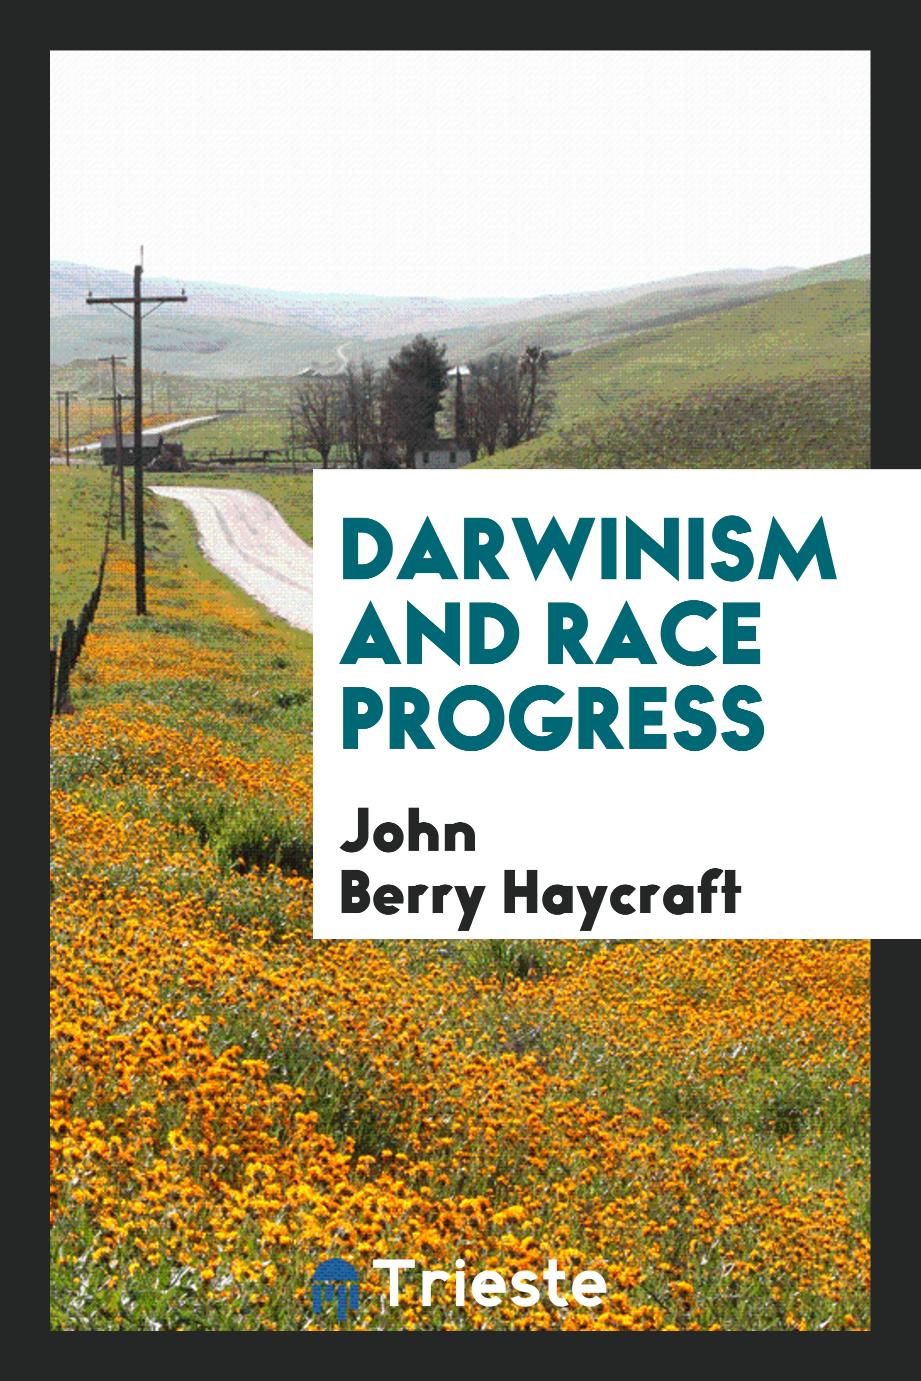 Darwinism and race progress